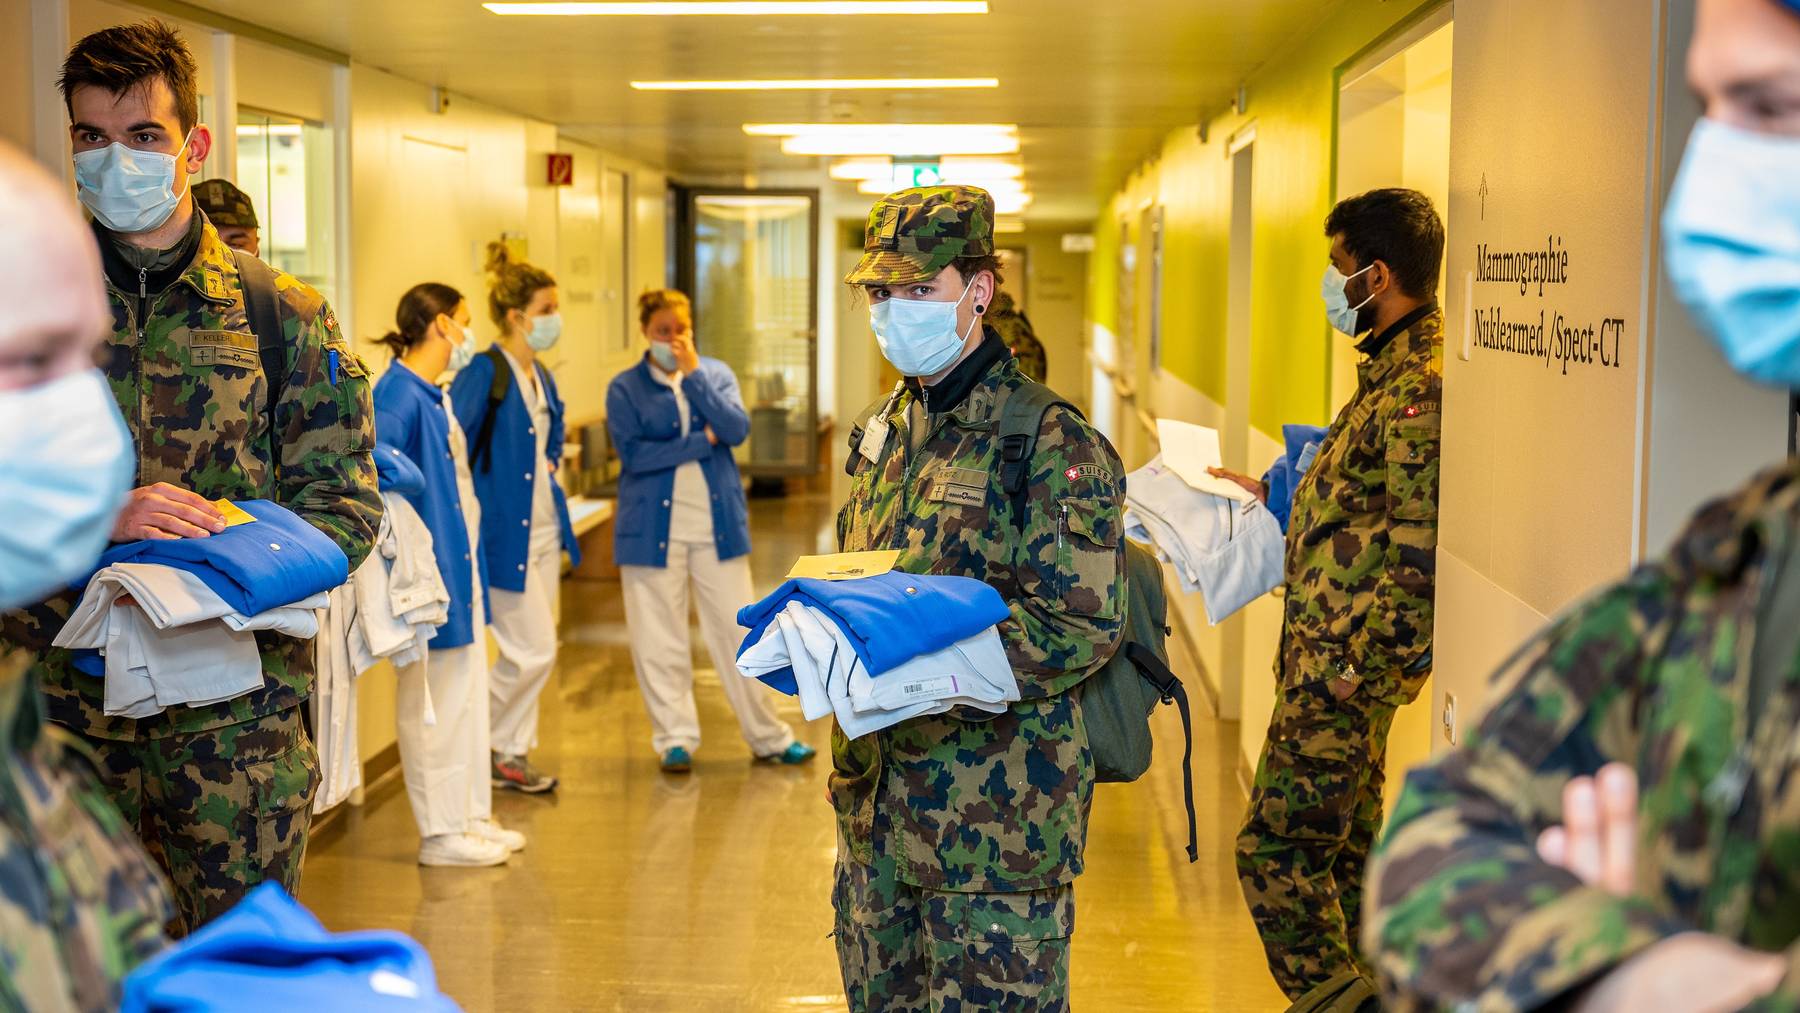 Bereits in der ersten Welle setzte der Bundesrat Armeeangehörige zur Unterstützung des Gesundheitswesens ein. Hier im Bruderholz, dem Kantonsspital Baselland.